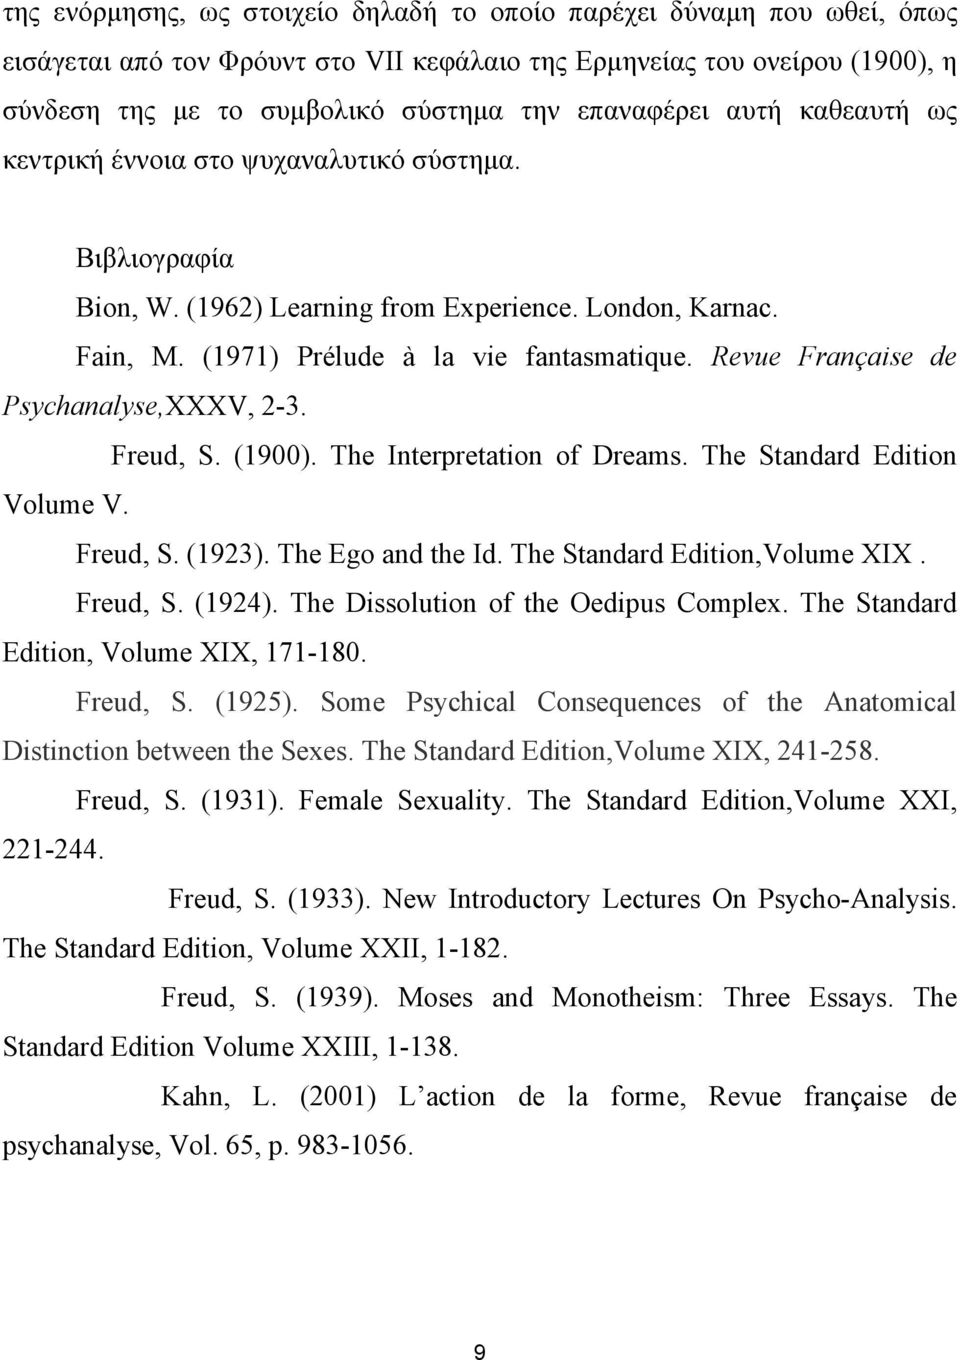 Revue Française de Psychanalyse,XXXV, 2-3. Freud, S. (1900). The Interpretation of Dreams. The Standard Edition Volume V. Freud, S. (1923). The Ego and the Id. The Standard Edition,Volume XIX.